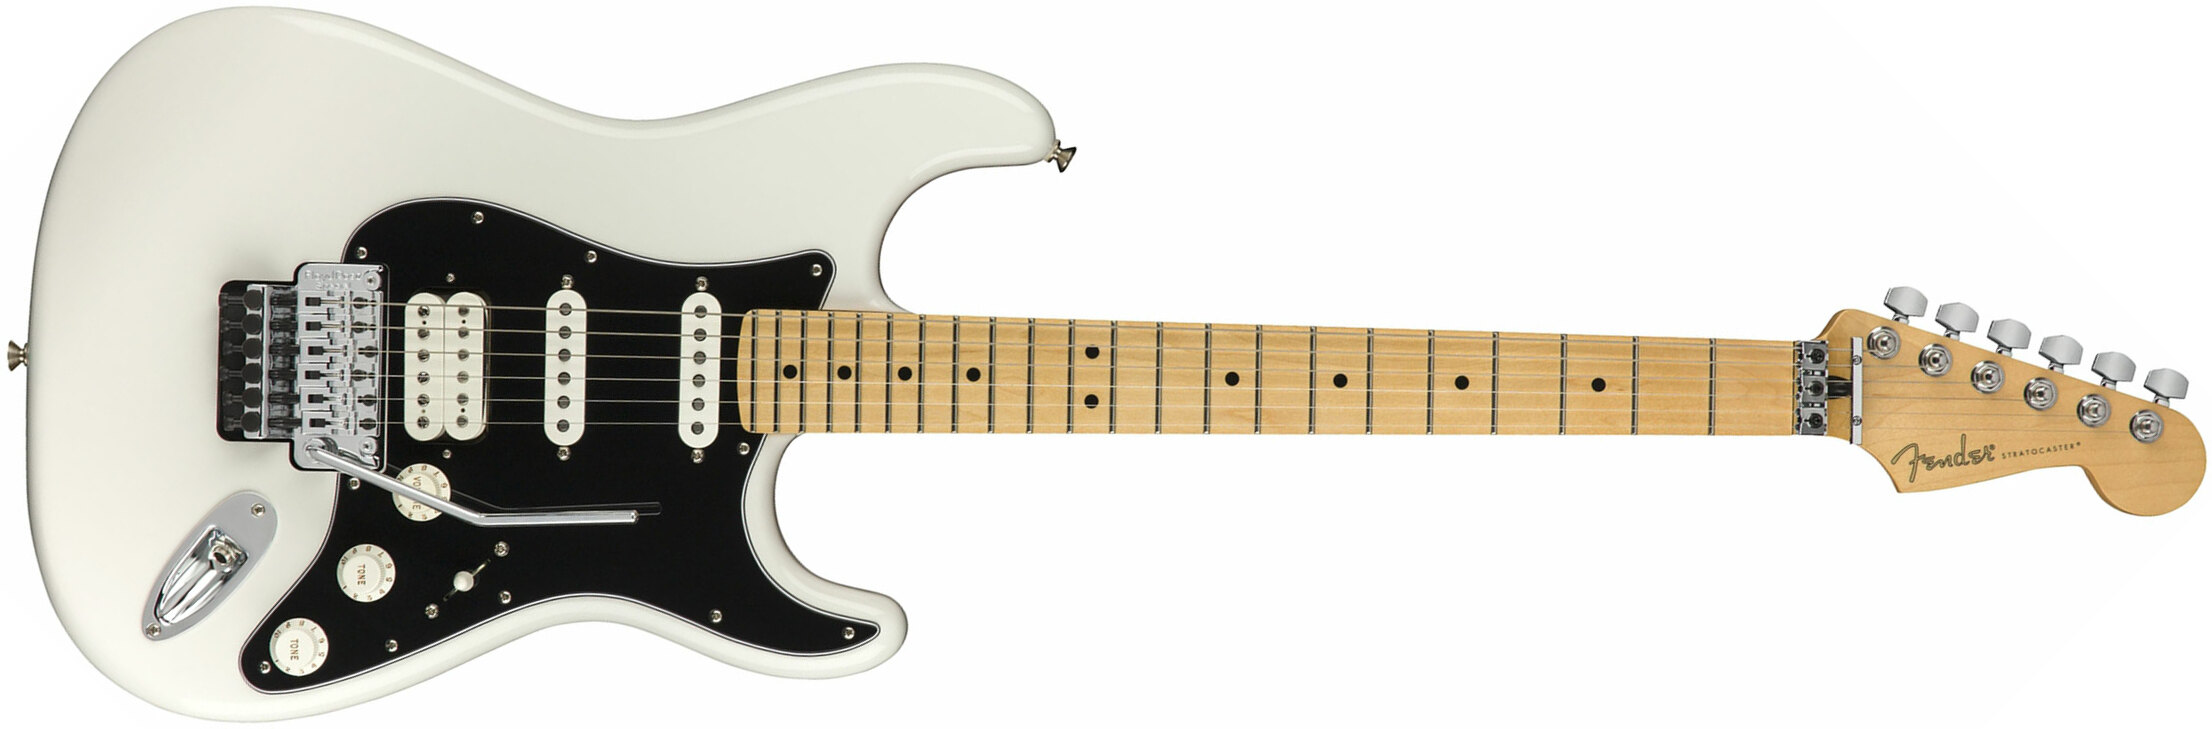 Fender Strat Player Floyd Rose Mex Hss Fr Mn - Polar White - E-Gitarre in Str-Form - Main picture